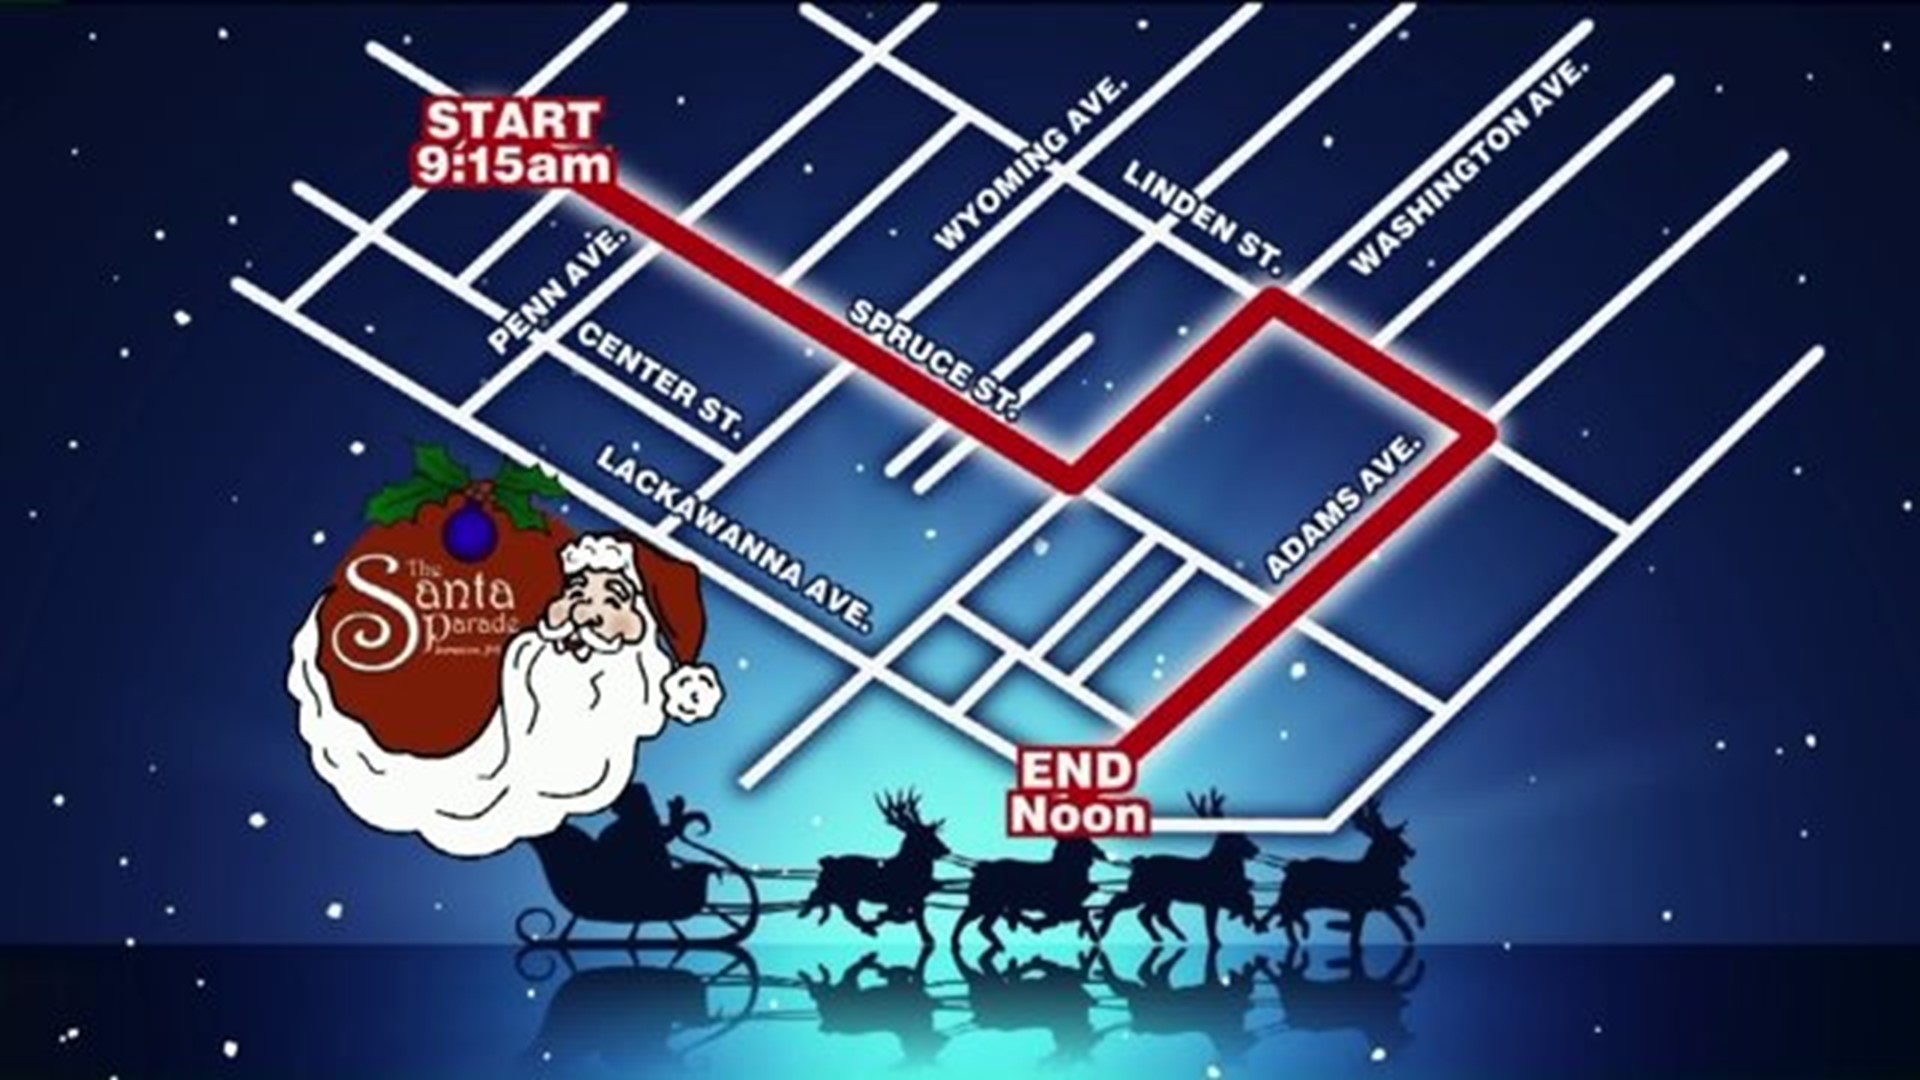 A Holiday Tradition: The Santa Parade in Scranton